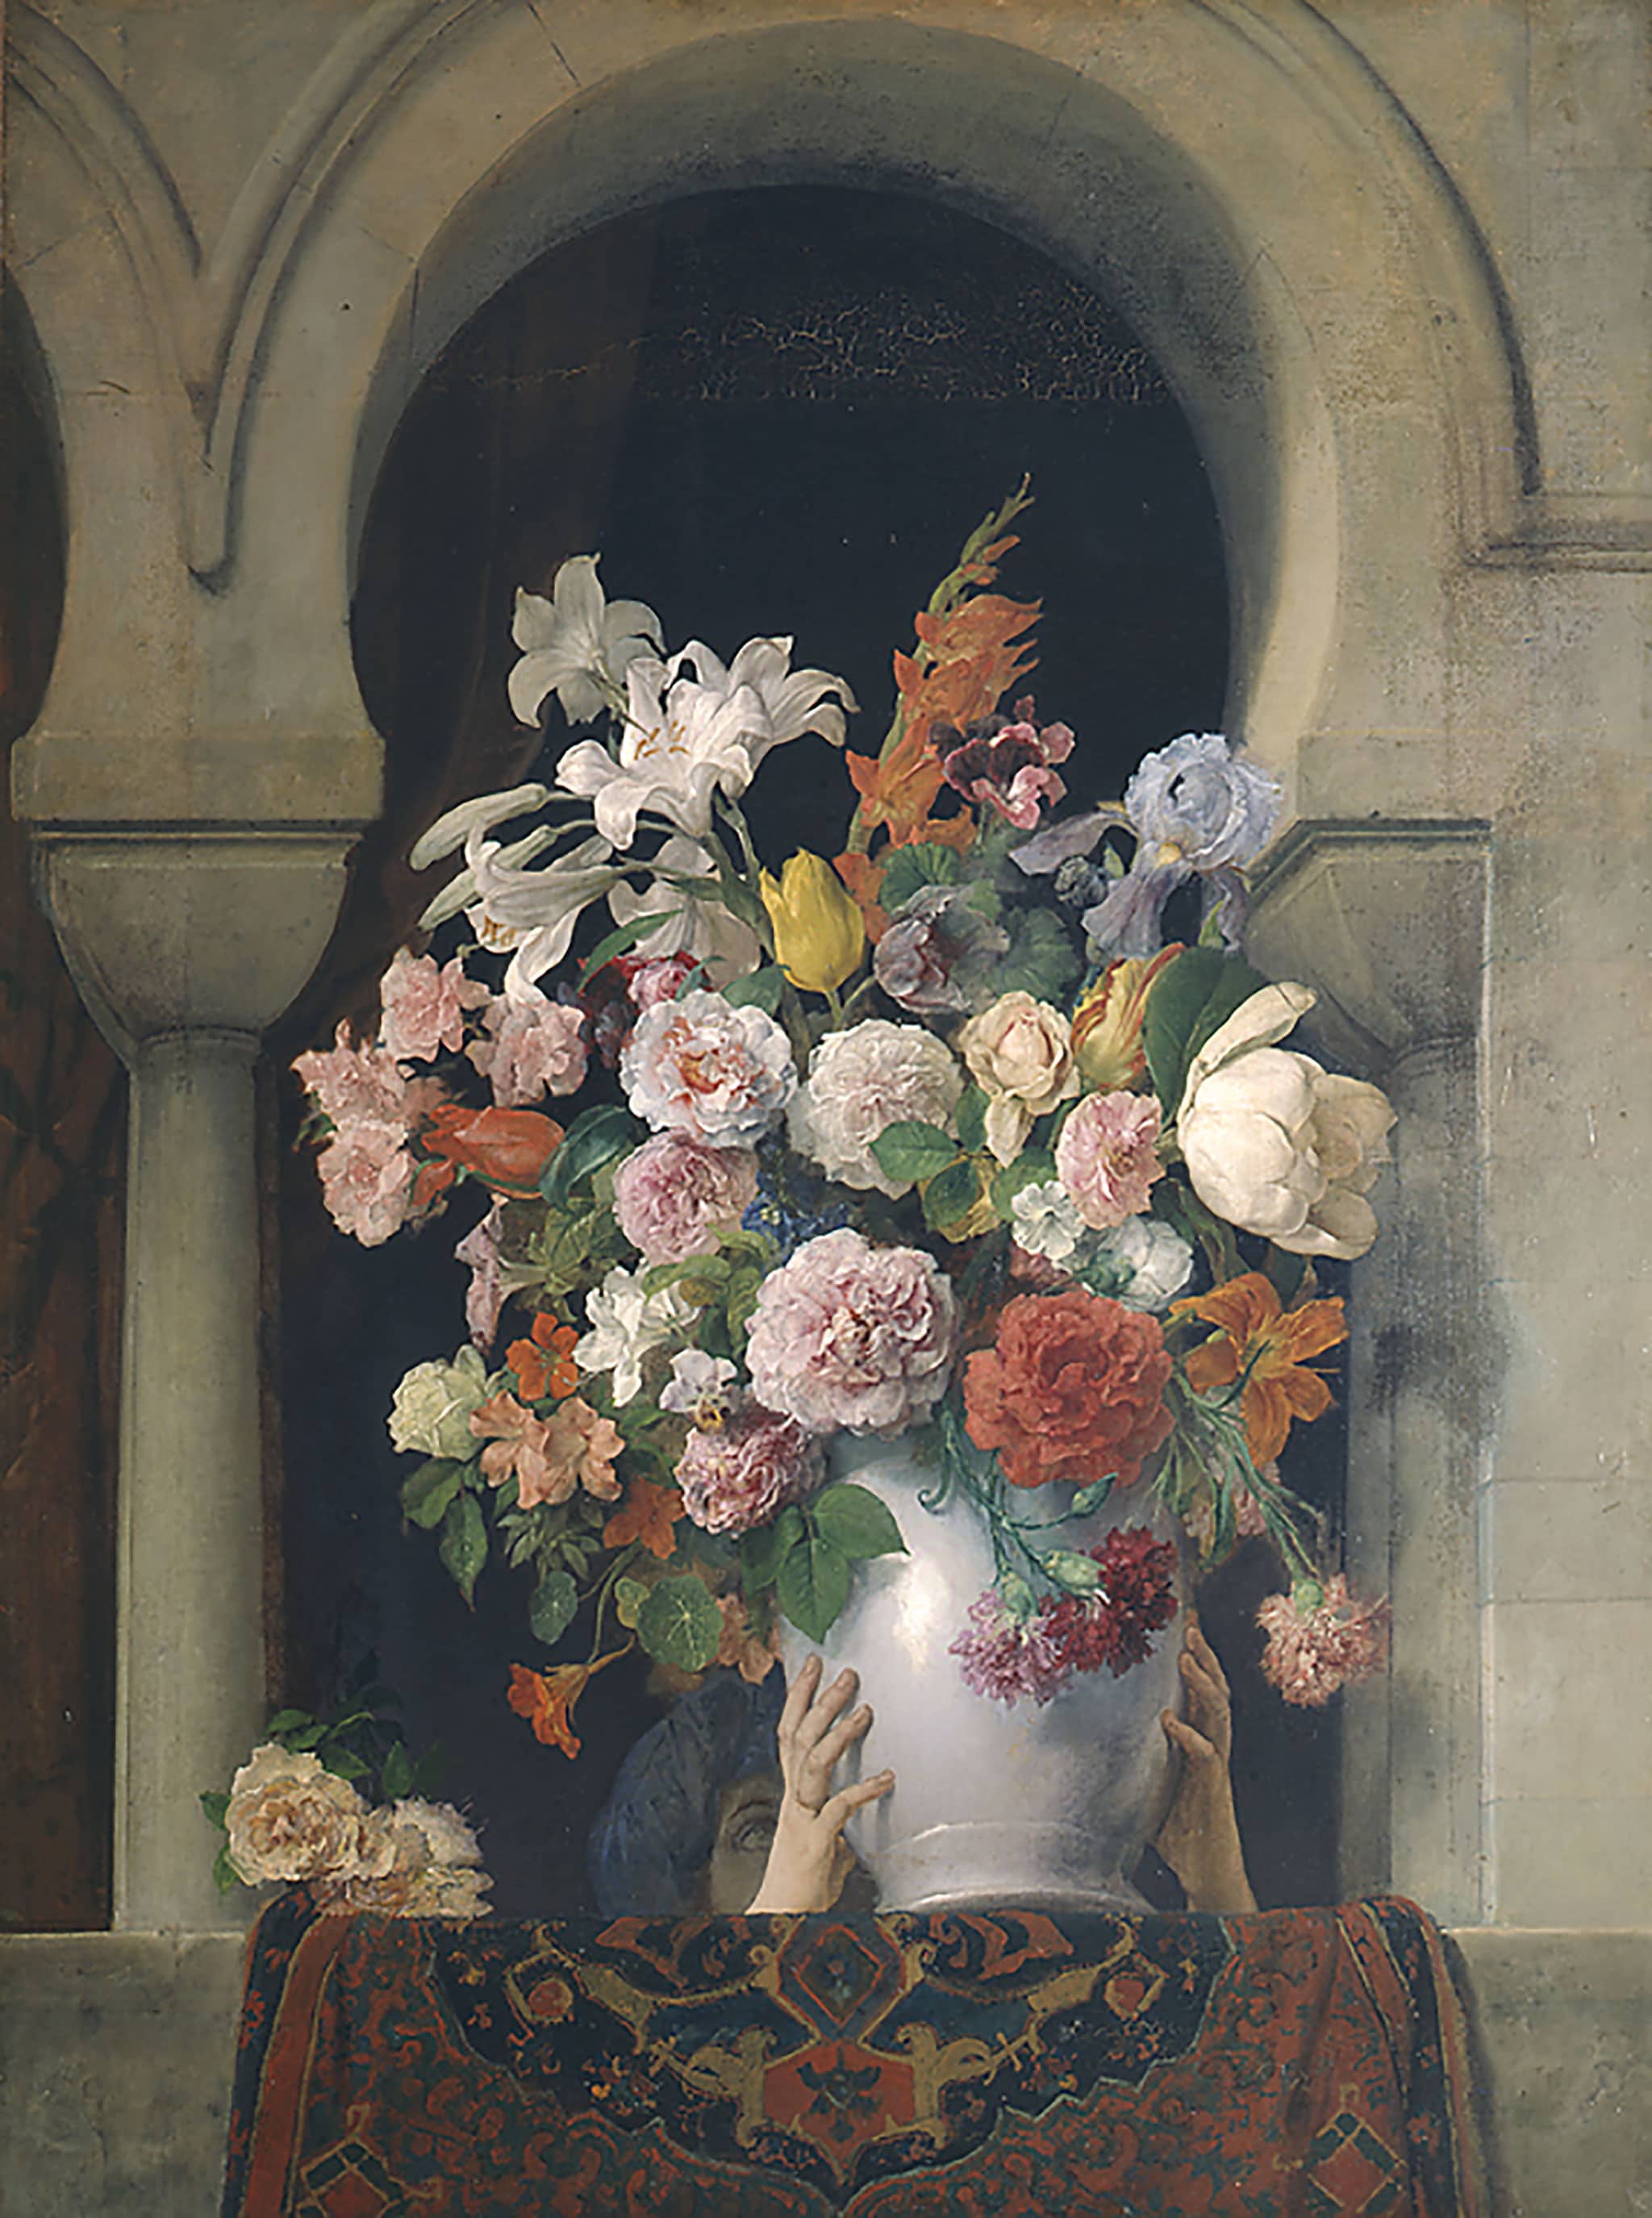 Francesco Hayez "Vaso di fiori sulla finestra di un harem", 1881. Olio su tela, 125 x 94,5 cm. Pinacoteca di Brera, Milano.